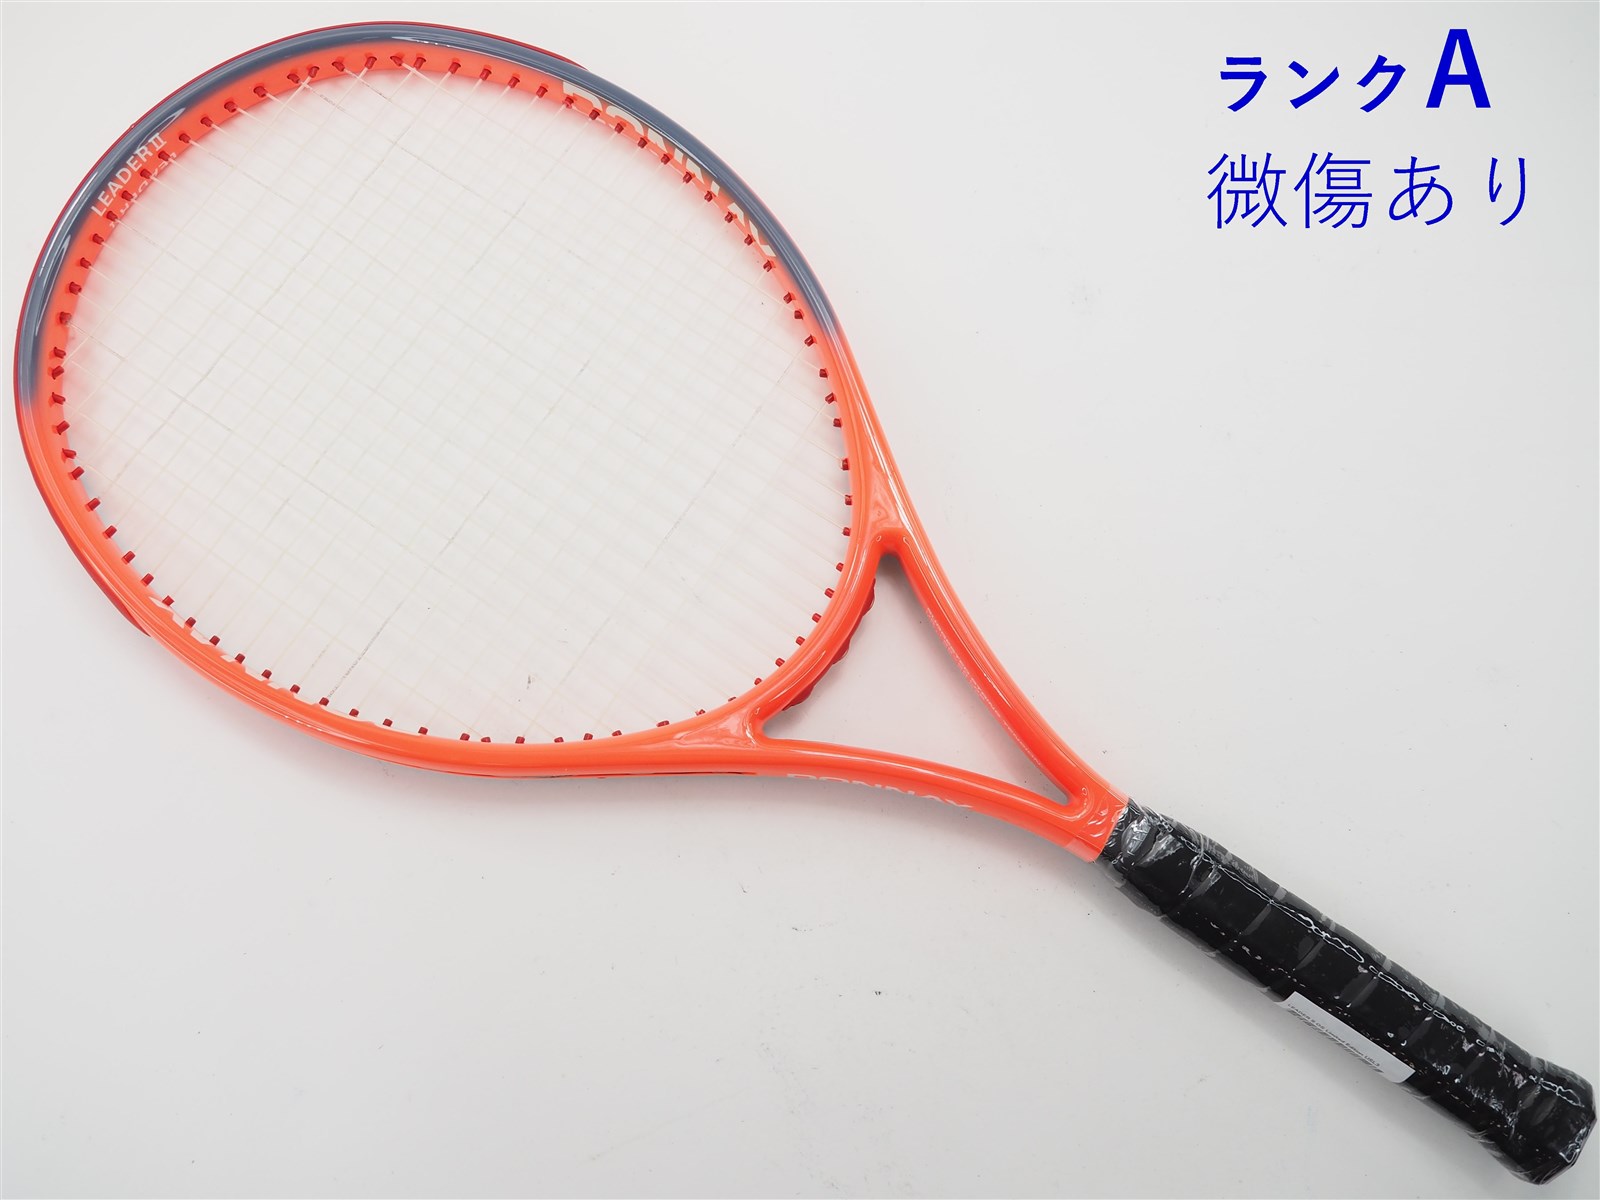 テニスラケット ドネー リーダー 2 OS リミテッド エディション (USL3